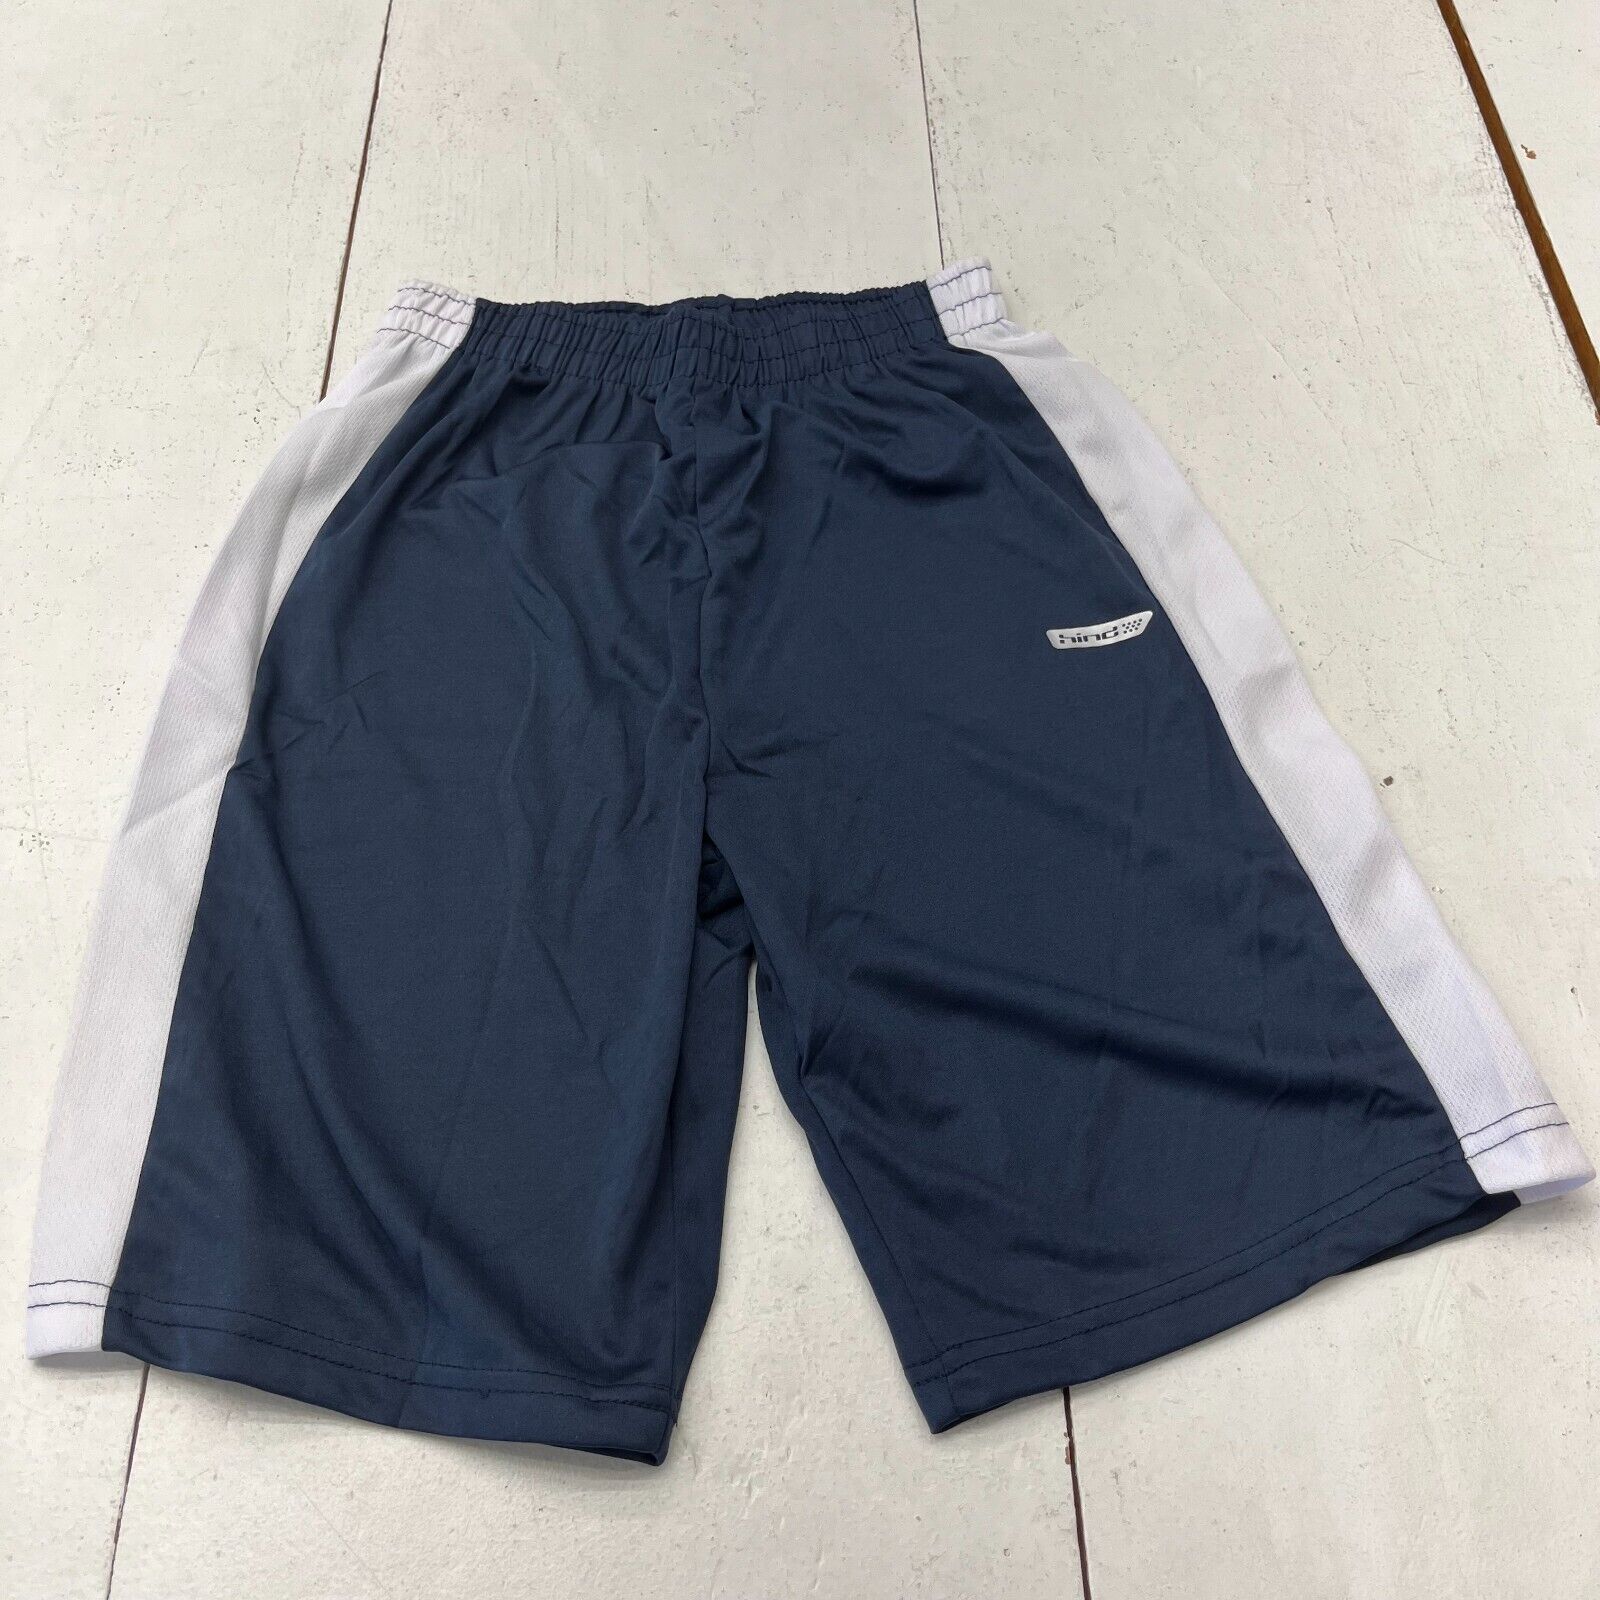 Hind Navy Blue & White Trim Athletic Shorts Boys Size Large (12)